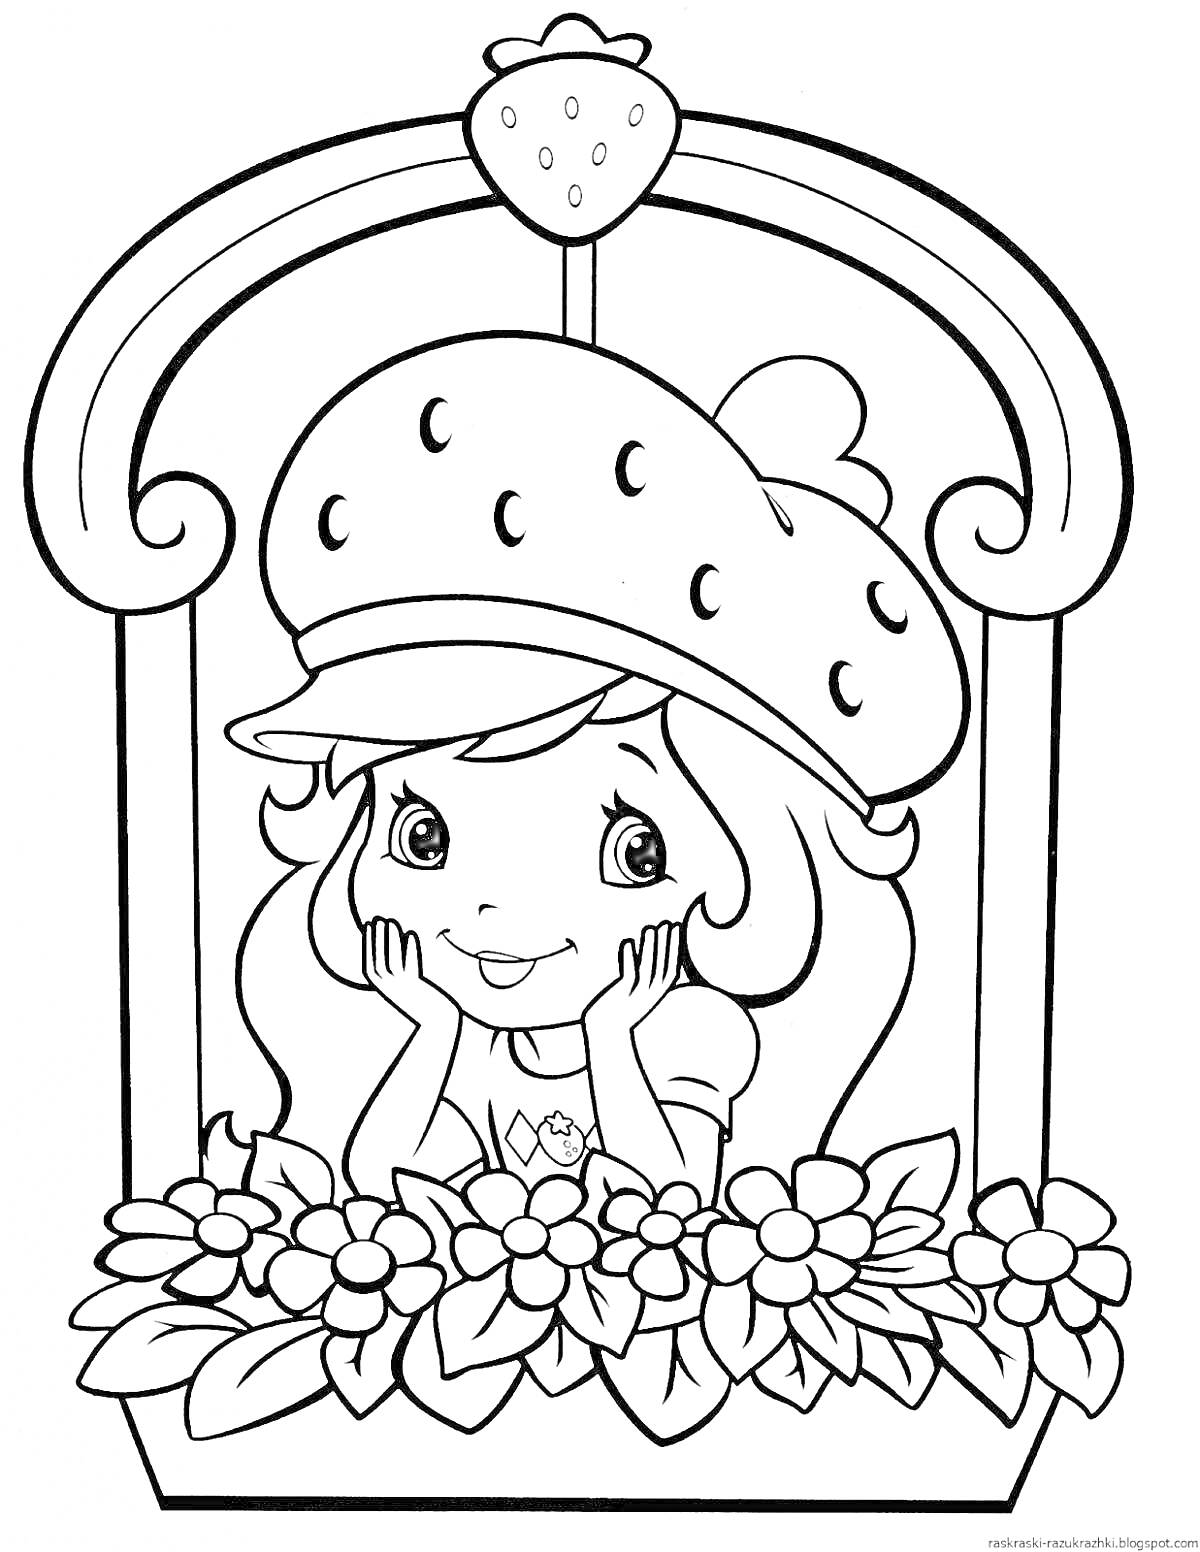 Раскраска Девочка в шляпе с изображением клубники, выглядывающая из окошка над клумбой с цветами